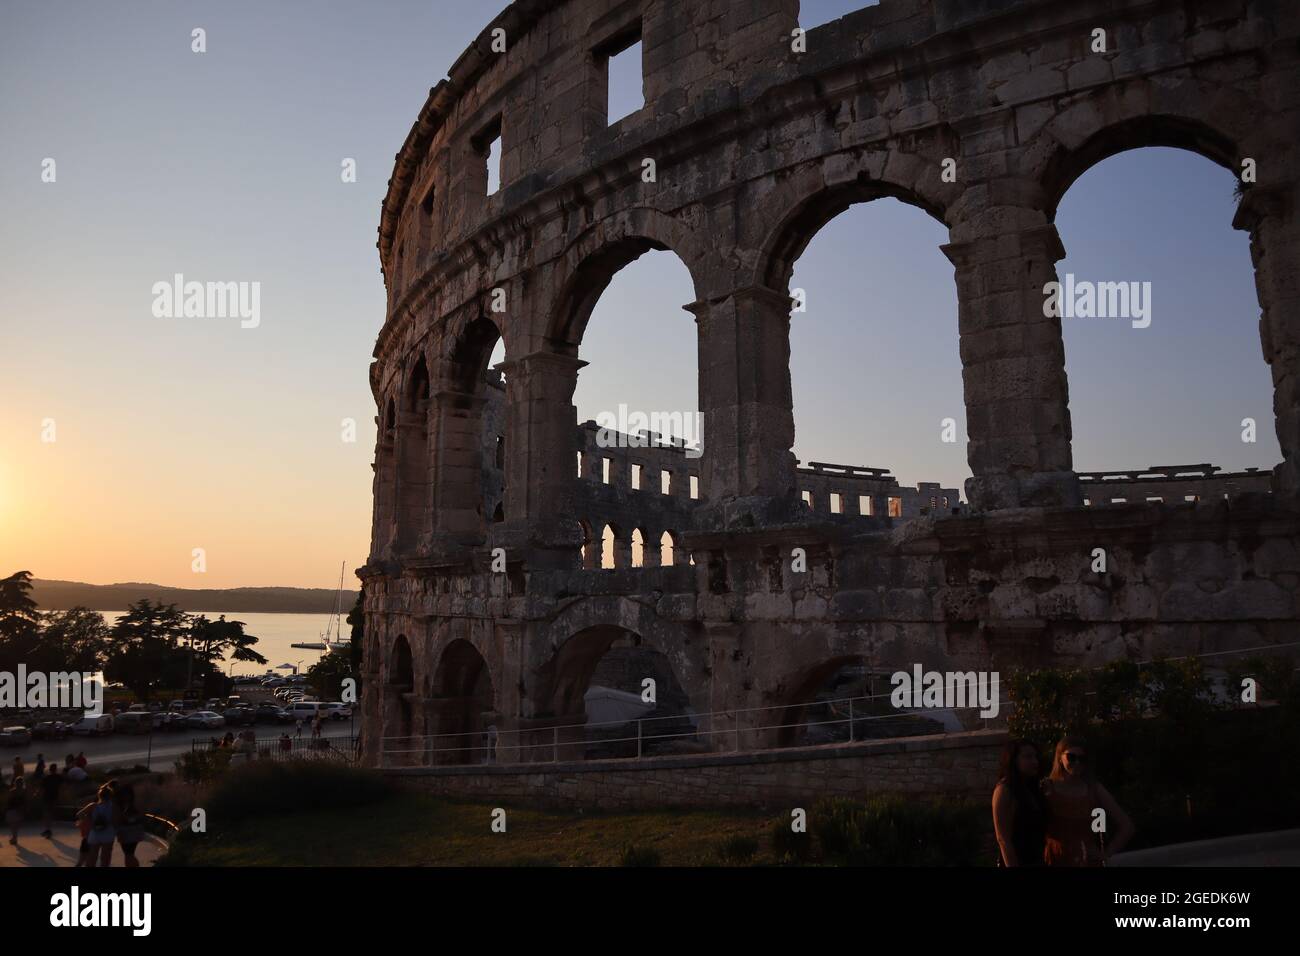 Arène romaine du premier siècle à Pula. Deuxième plus grande arène d'Europe. Photo prise le soir avec une lumière exceptionnelle. Banque D'Images